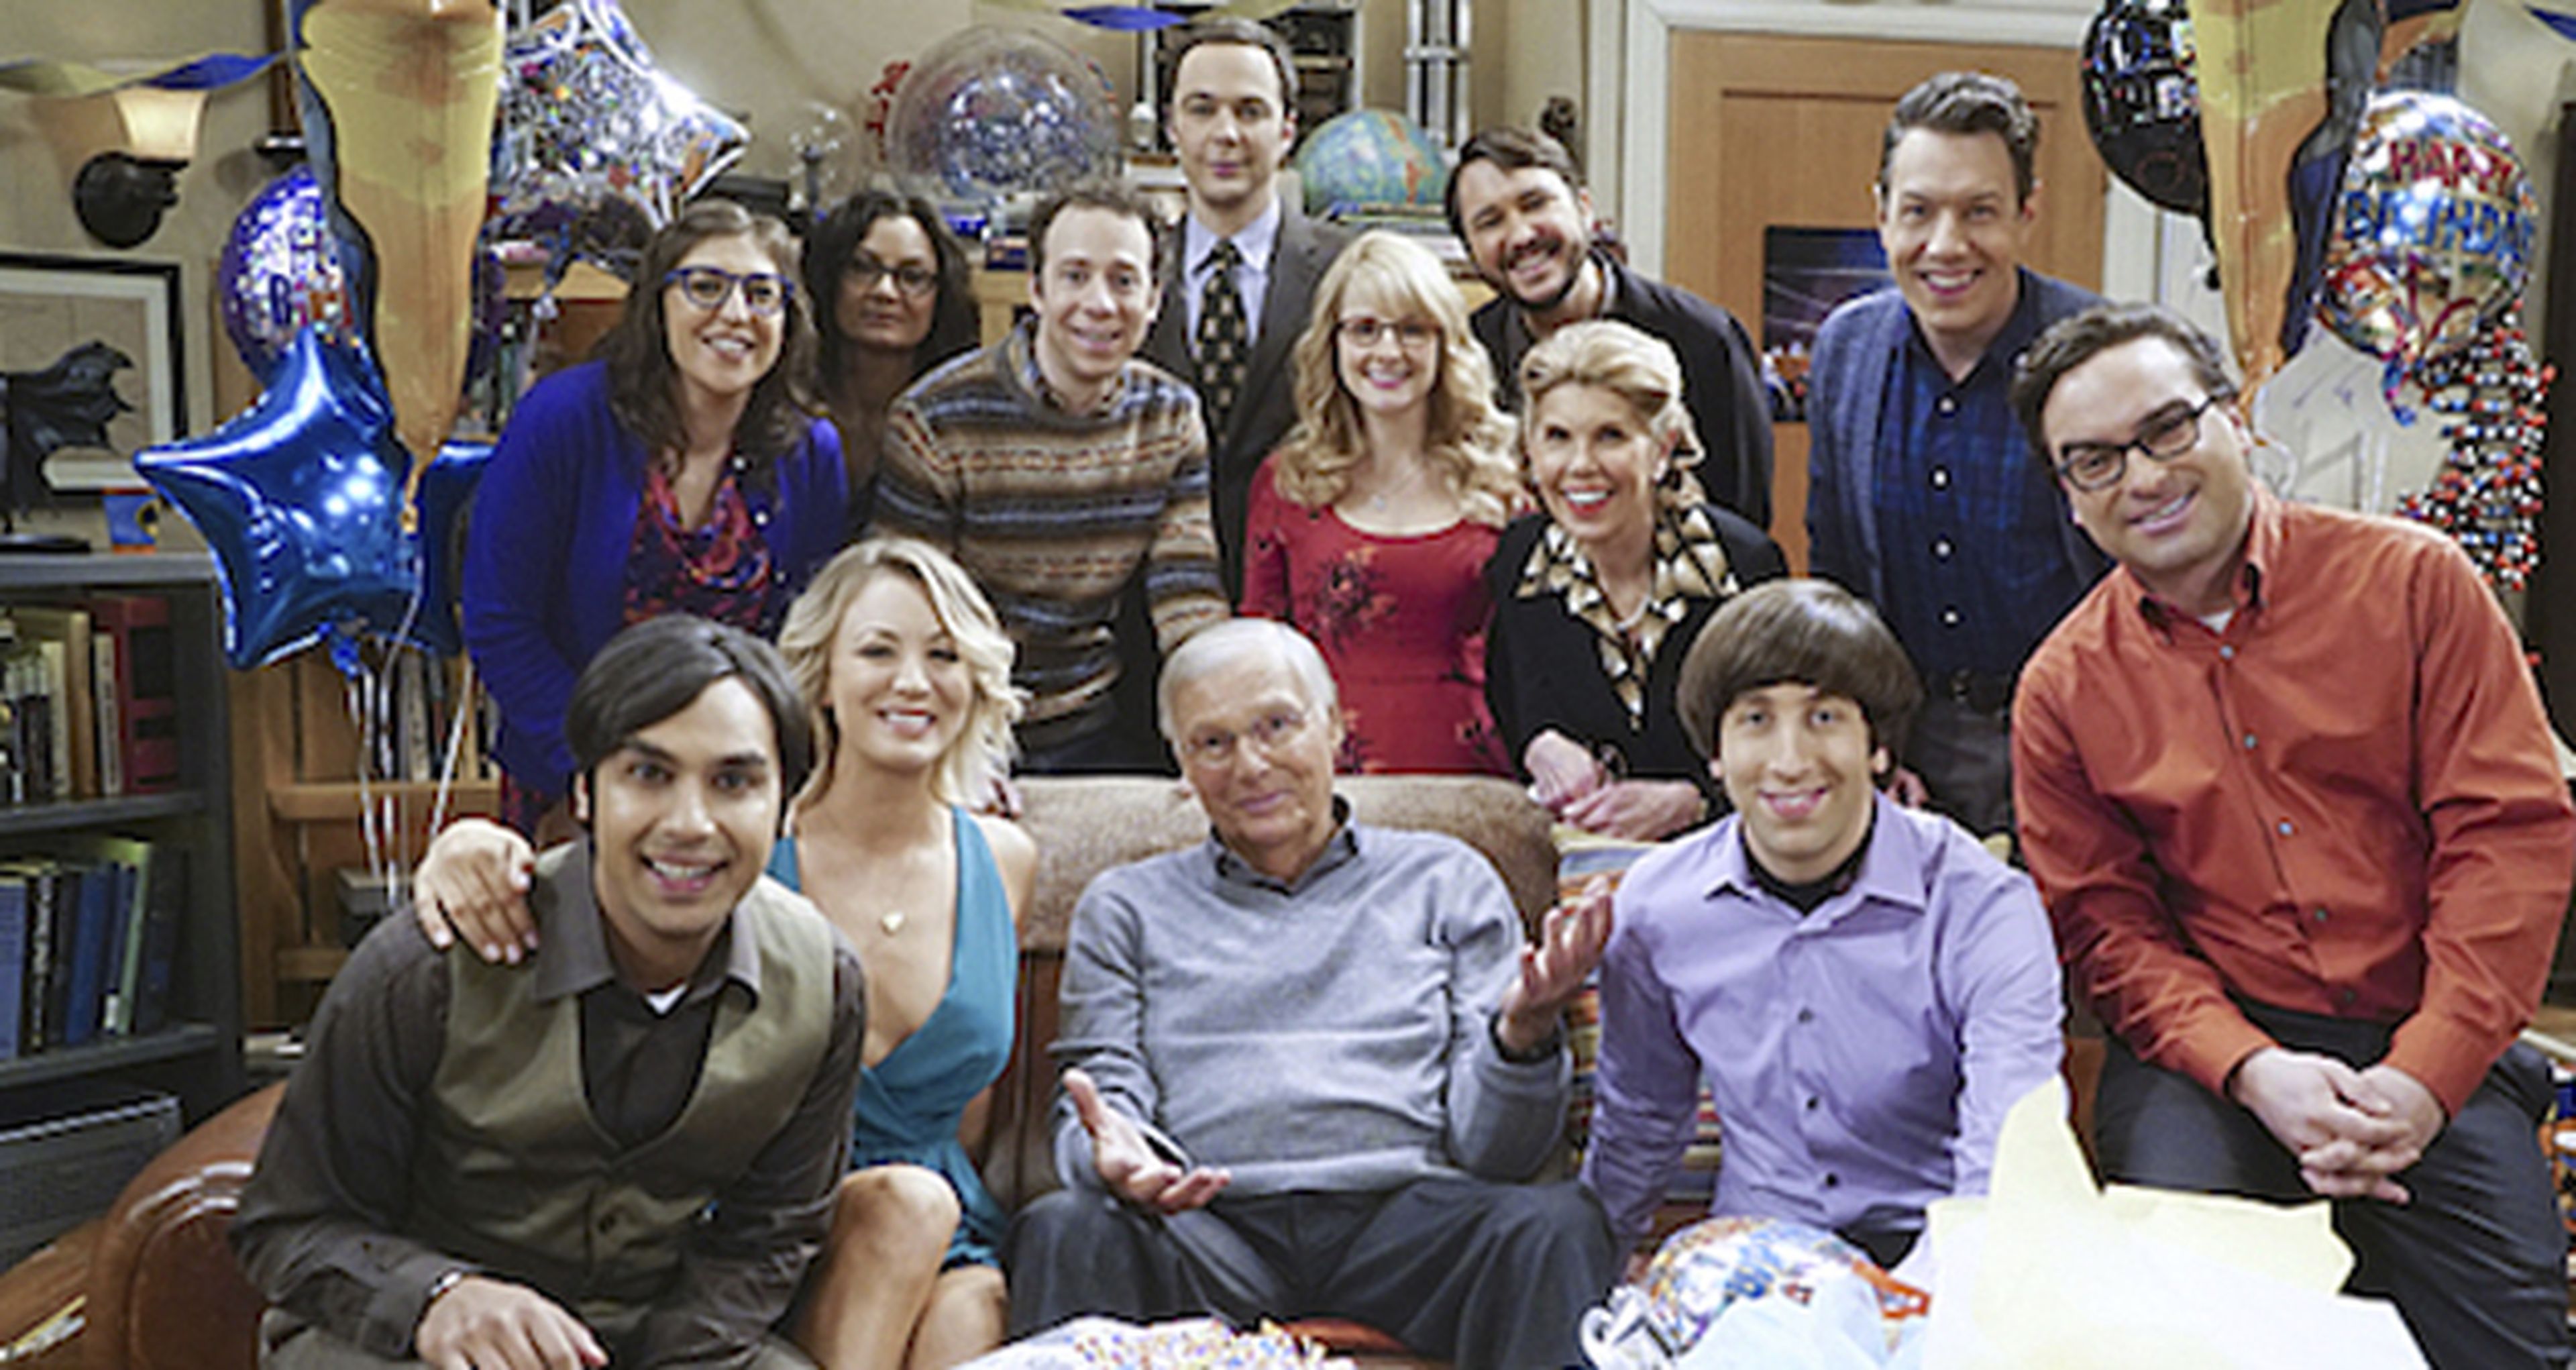 The Big Bang Theory - TNT emite mañana el Episodio 200 en España con el cameo de Adam West